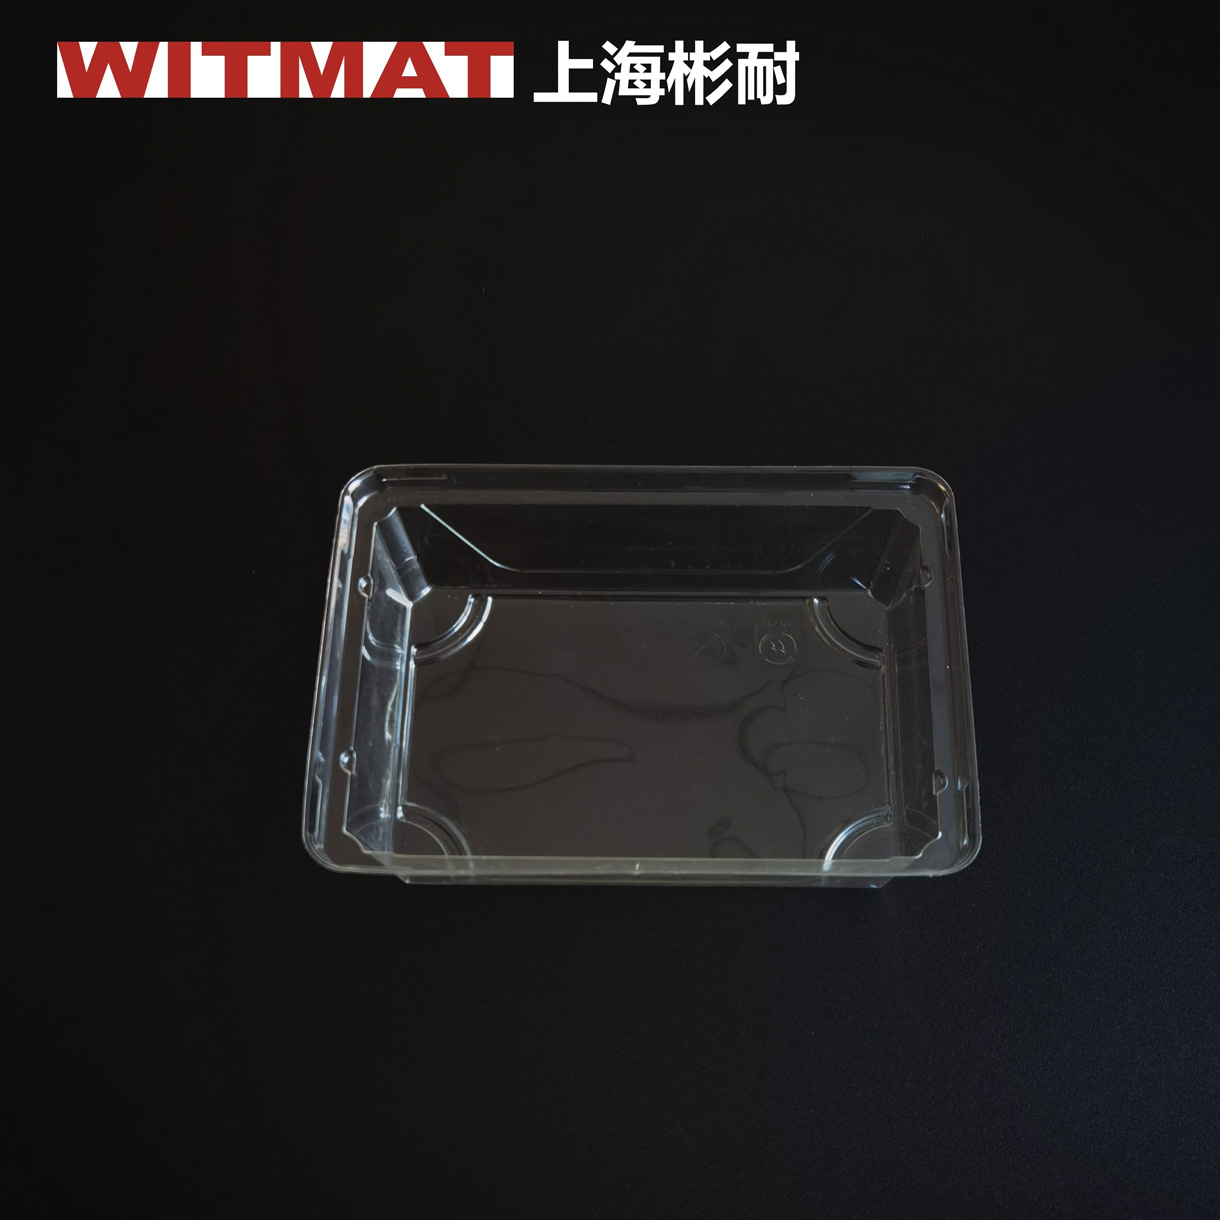 上海彬耐新材料有限公司将亮相CIPPME上海国际包装展